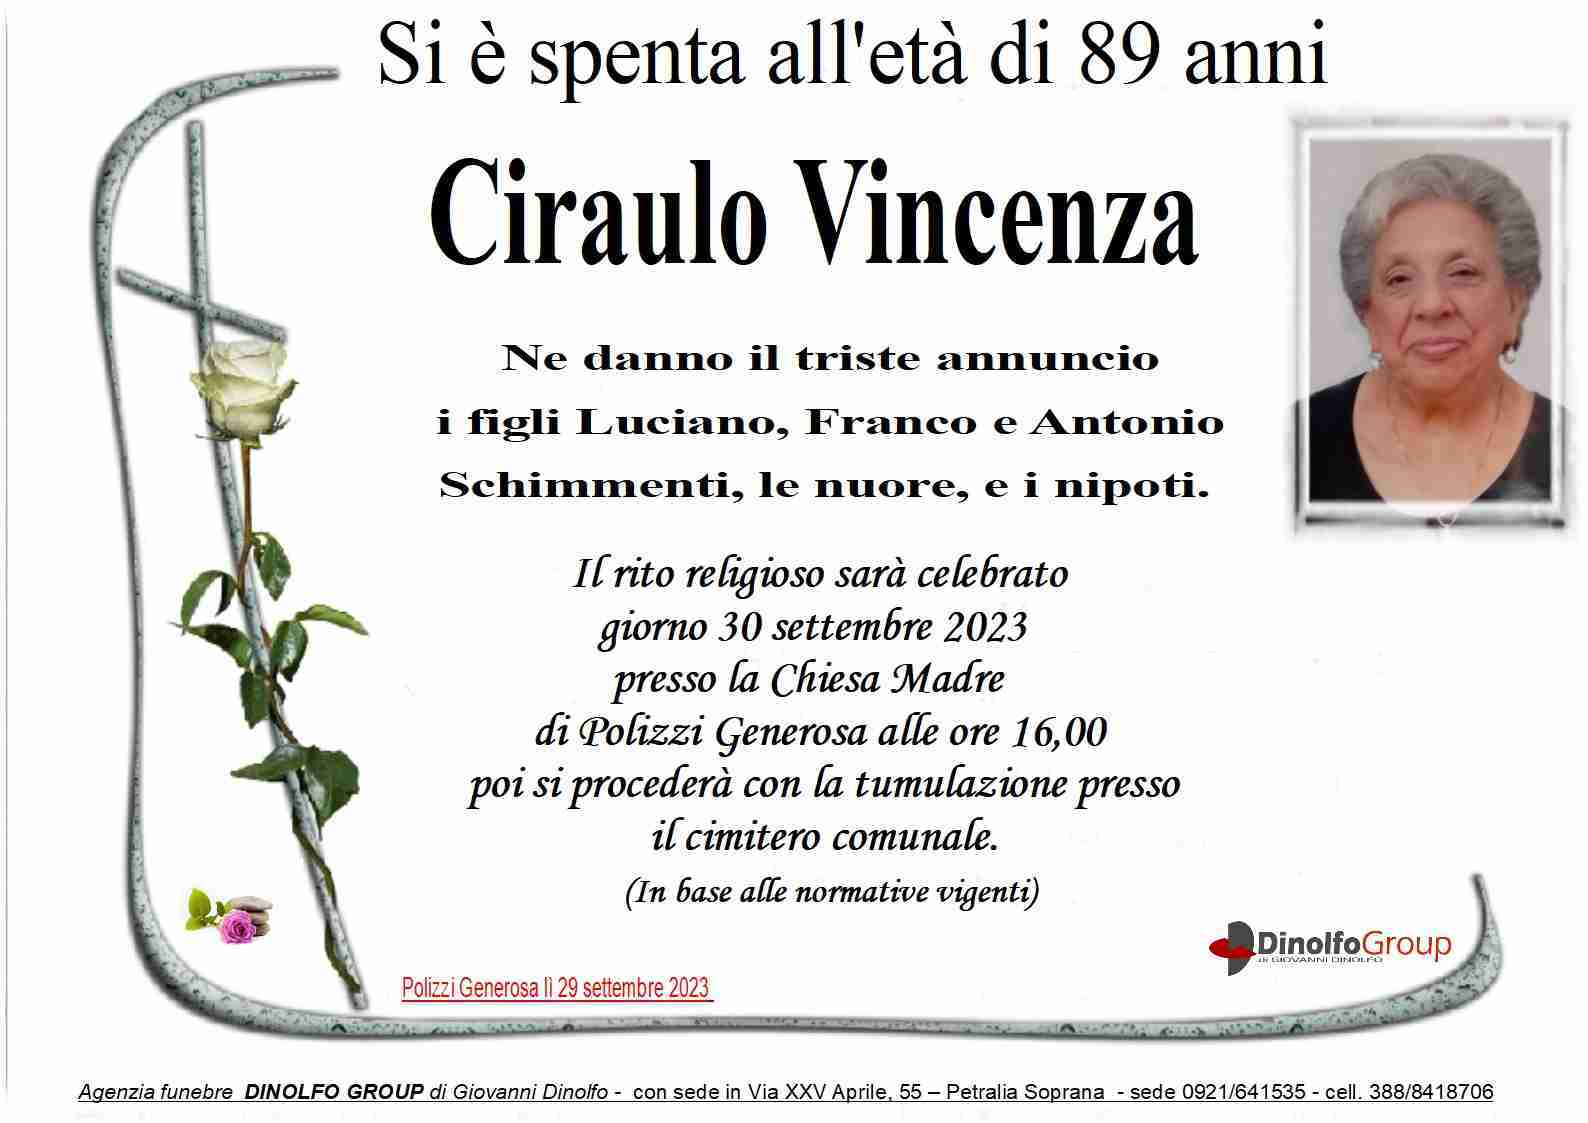 Vincenza Ciraulo